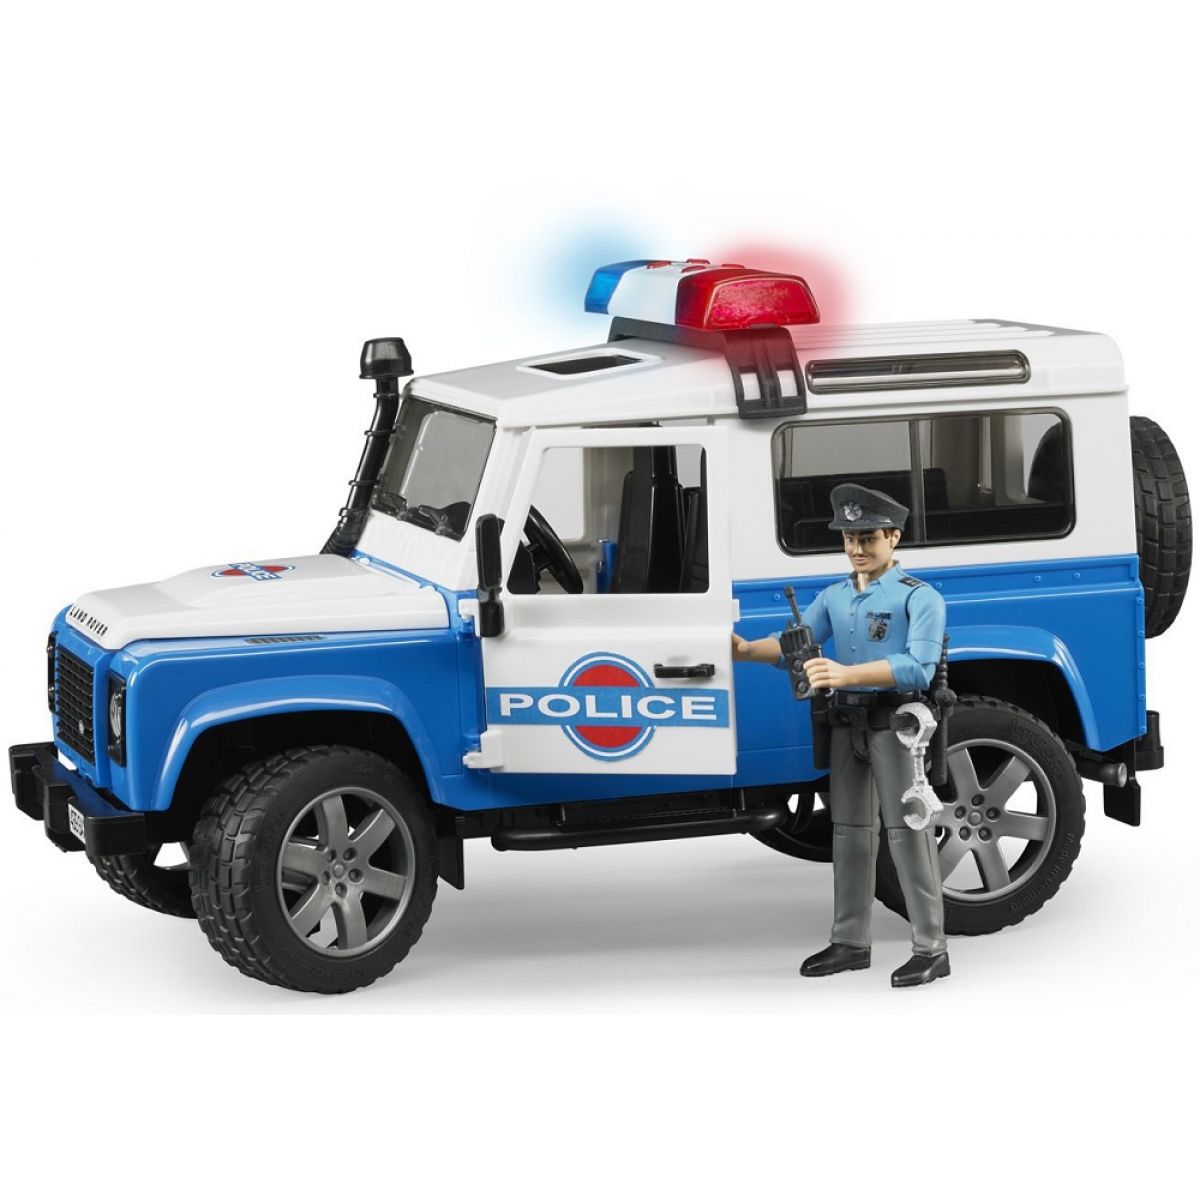 Bruder 02595 Policejní Land Rover s figurkou